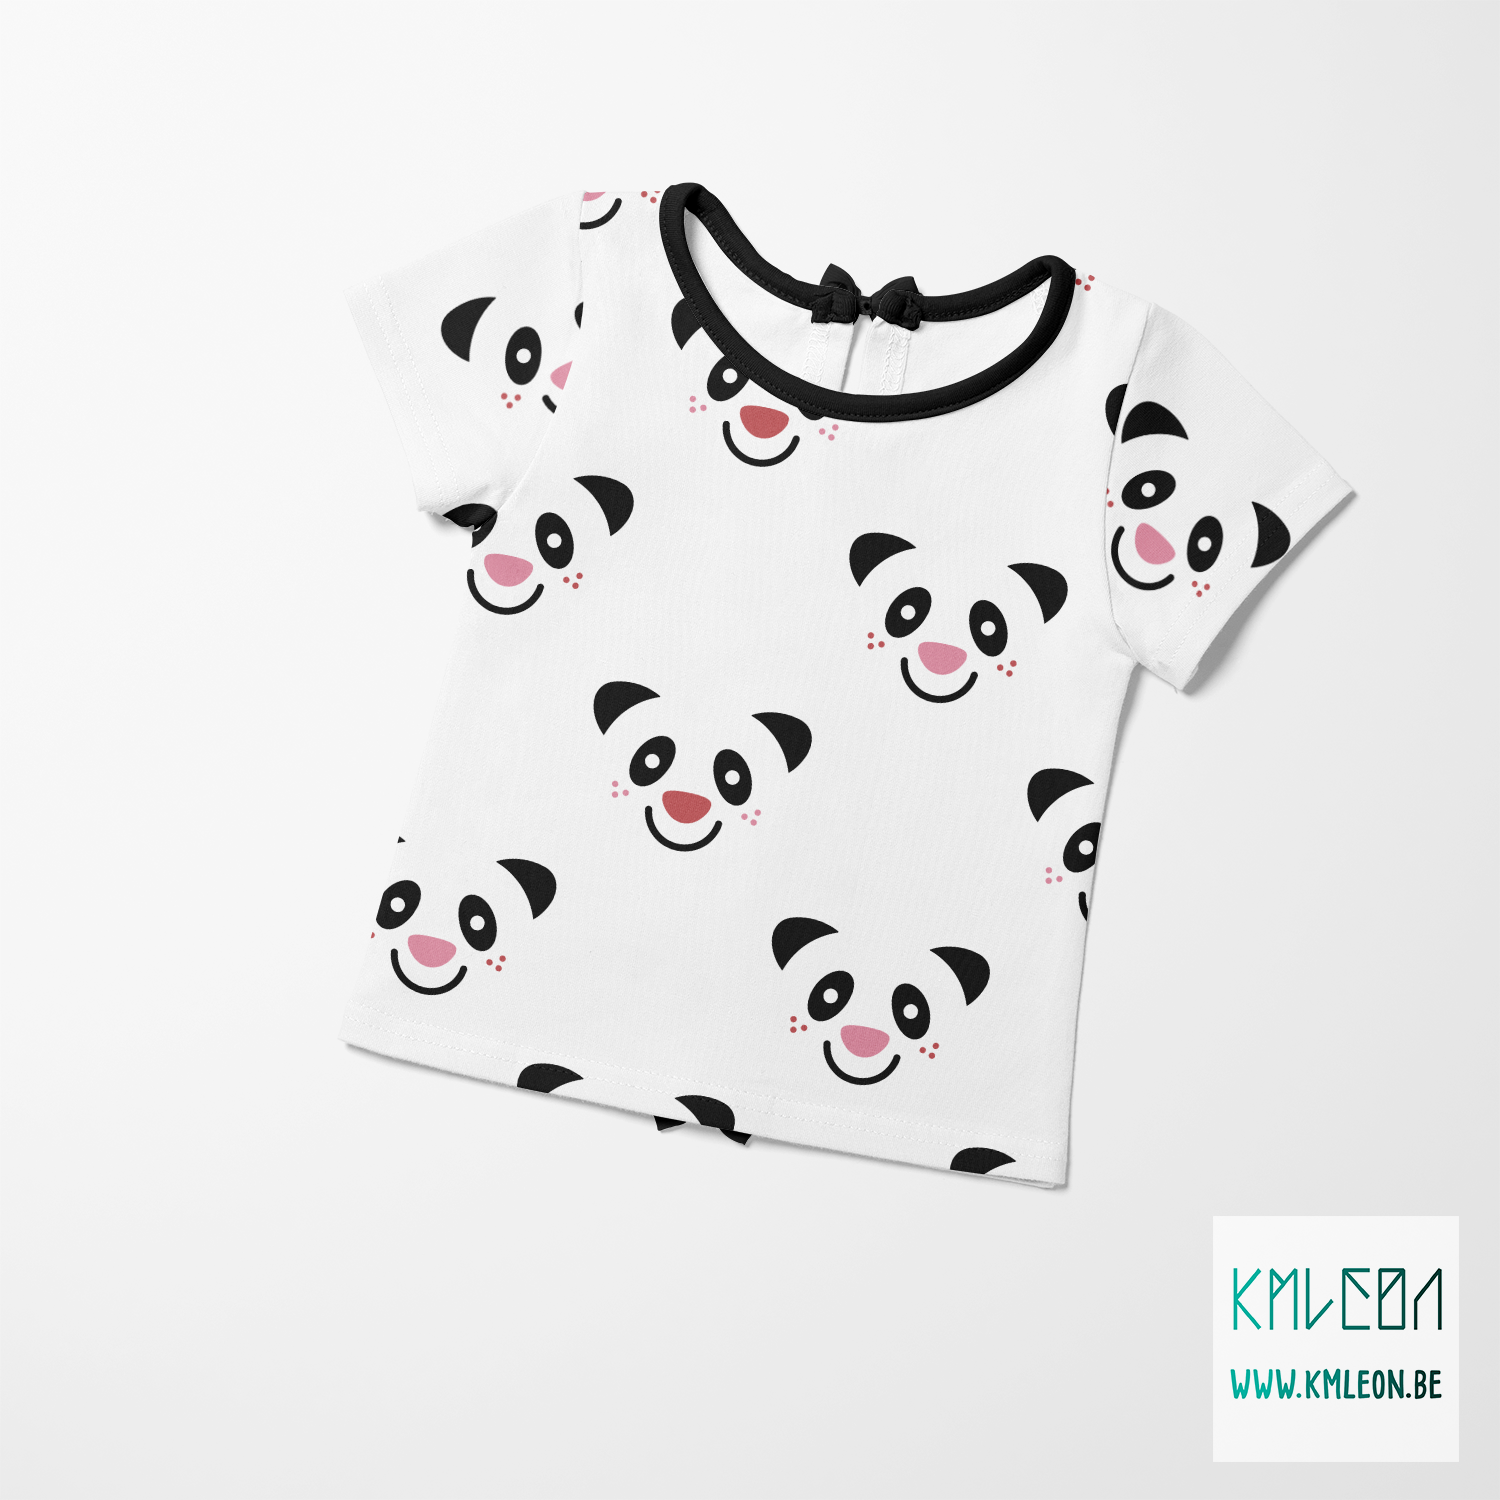 Pandas fabric